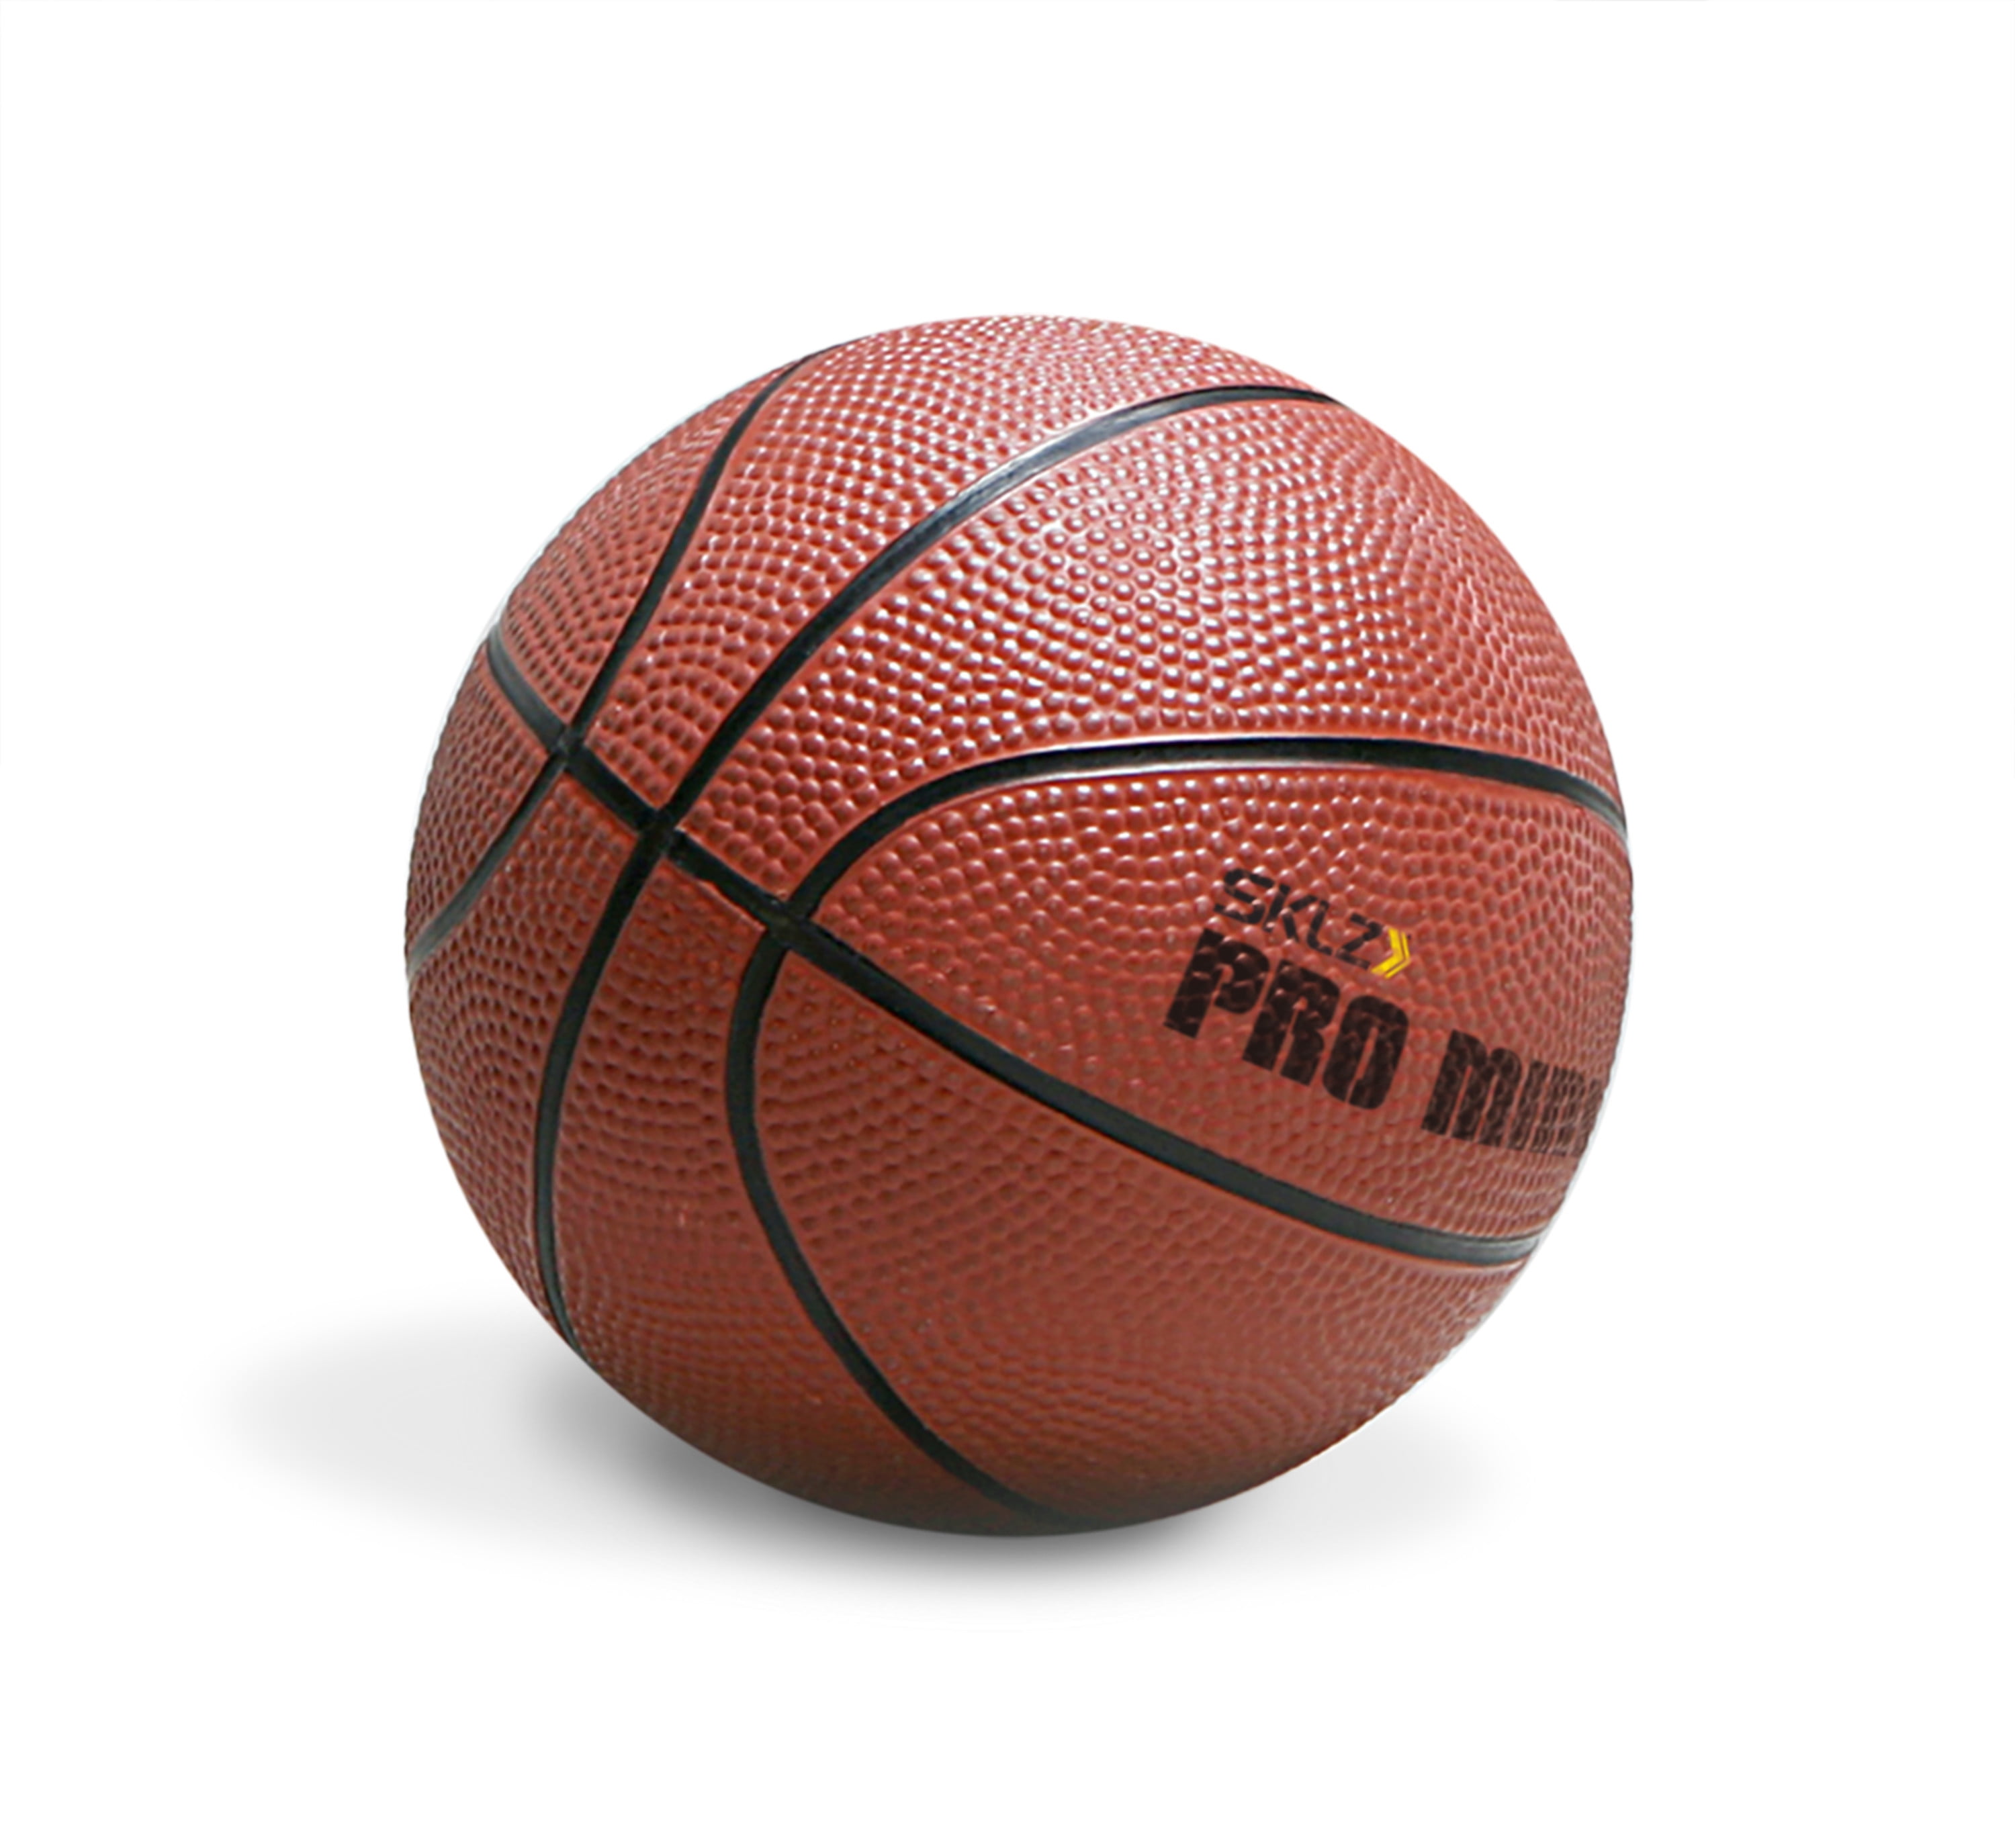 Спортивные магазины баскетбольные мячи. Мячи баскетбольные мини Баскет. Мяч баскетбольный мини Баскет 5. SKLZ Pro Mini Hoop XL. Mini Hoop мяч баскетбол.